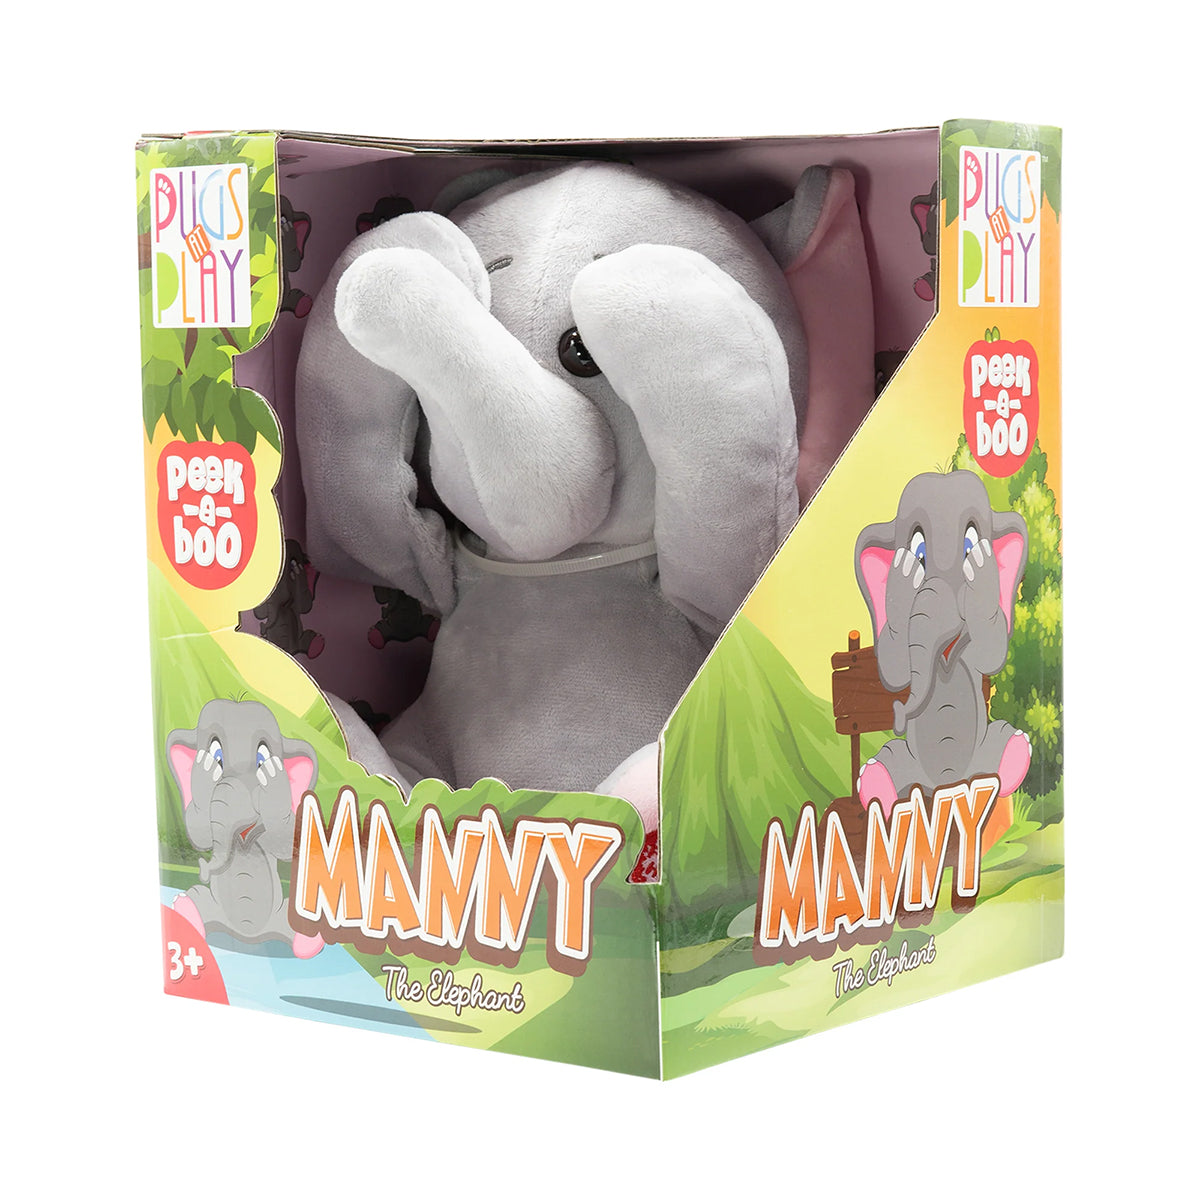 Peek A Boo Manny Elephant